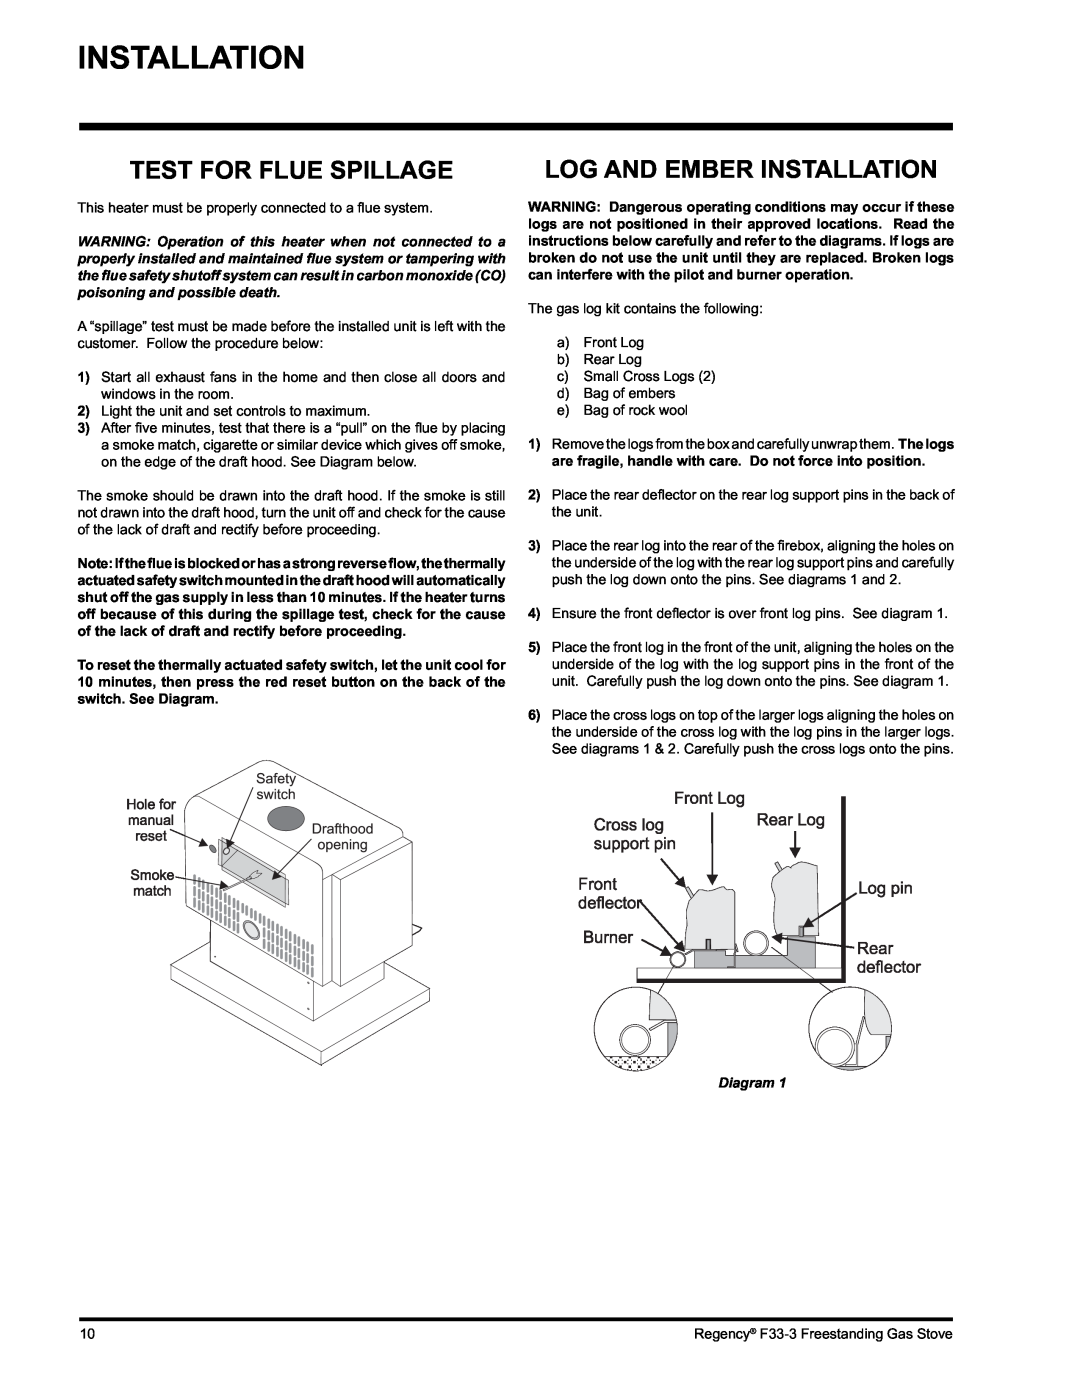 Regency Wraps F33 installation manual Test For Flue Spillage, Log And Ember Installation, Diagram 